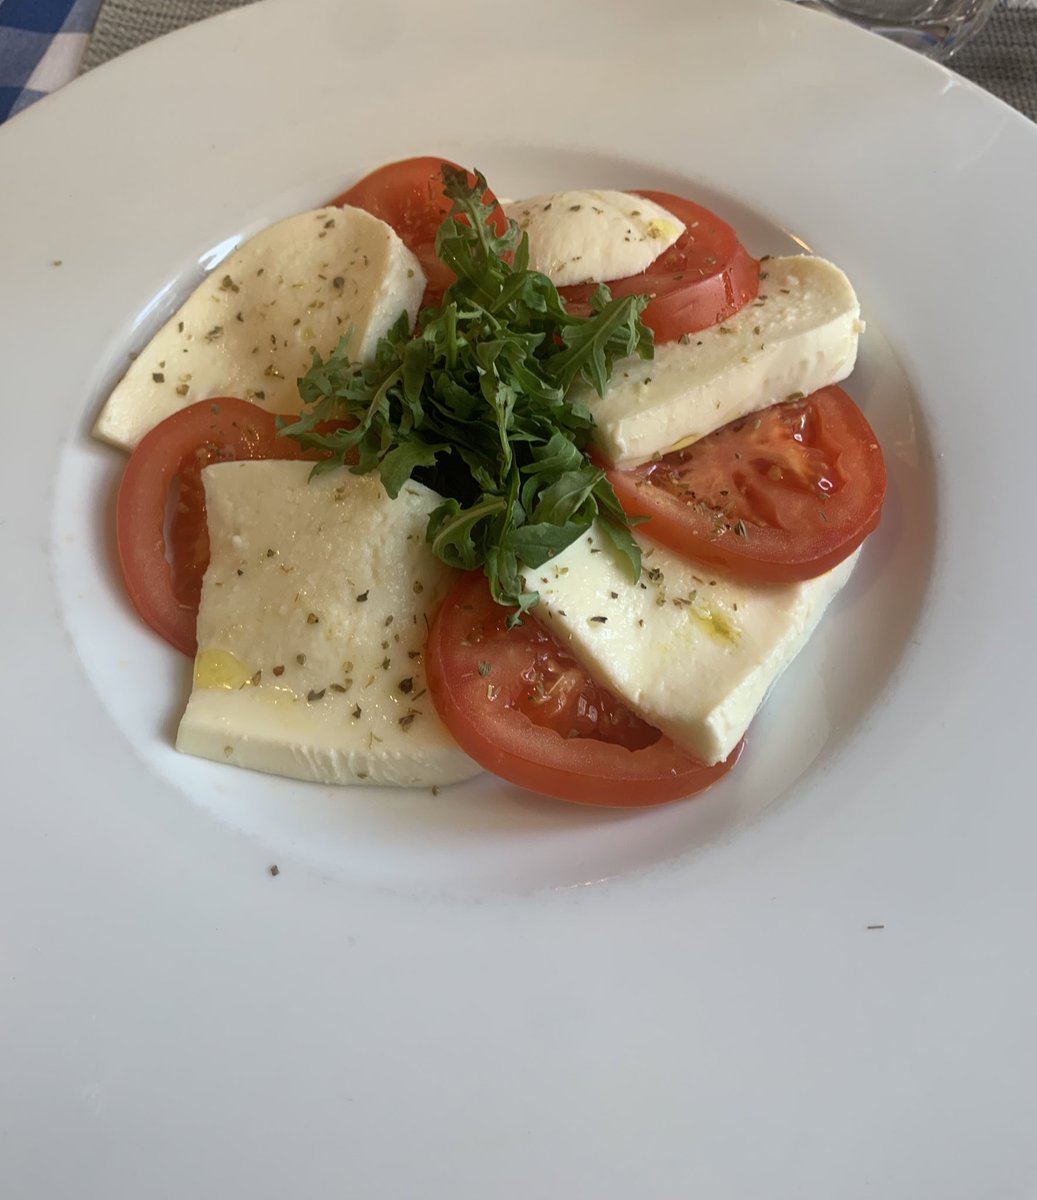 calorie estimate? Tomato, mozzarella, arugula and a drizzle of olive oil